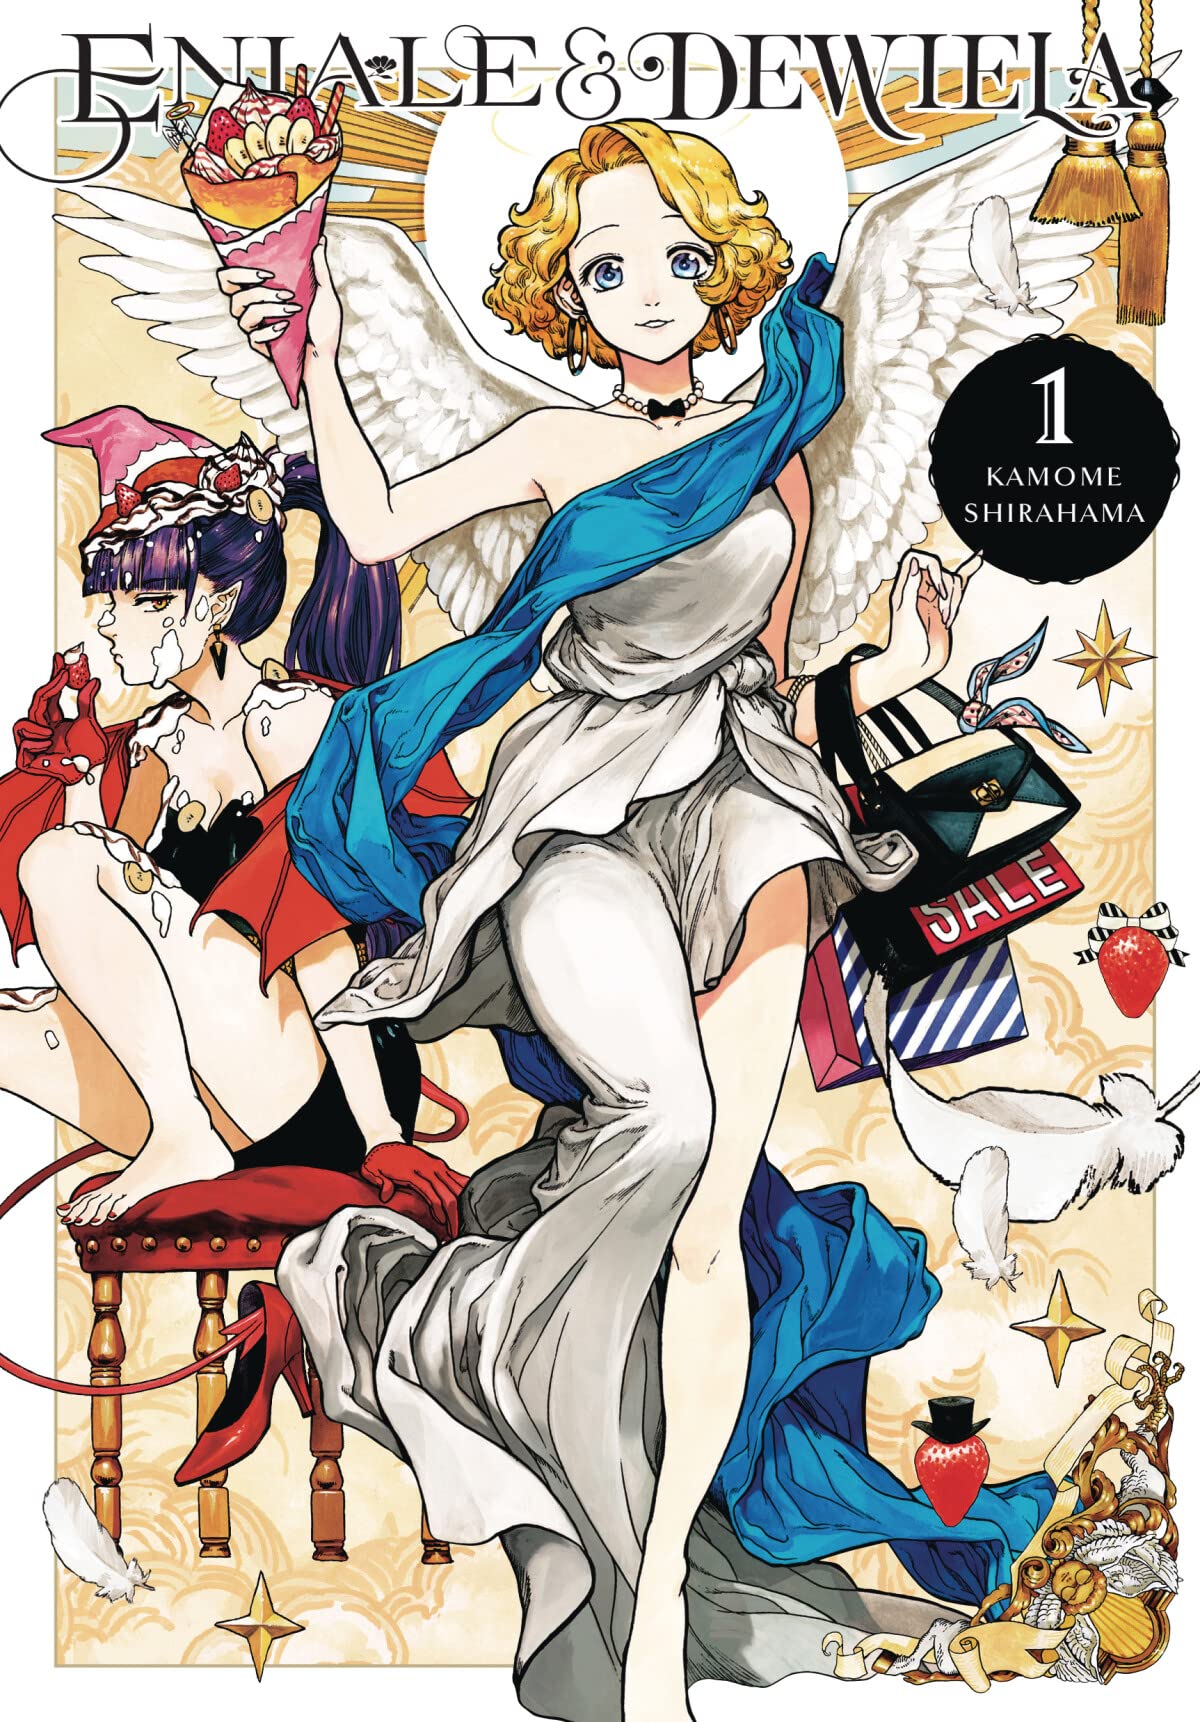 SAKAMOTO DAYS Vol 1-9 Set Jump Comic Japanese Shonen Manga Anime Yuto  Suzuki New